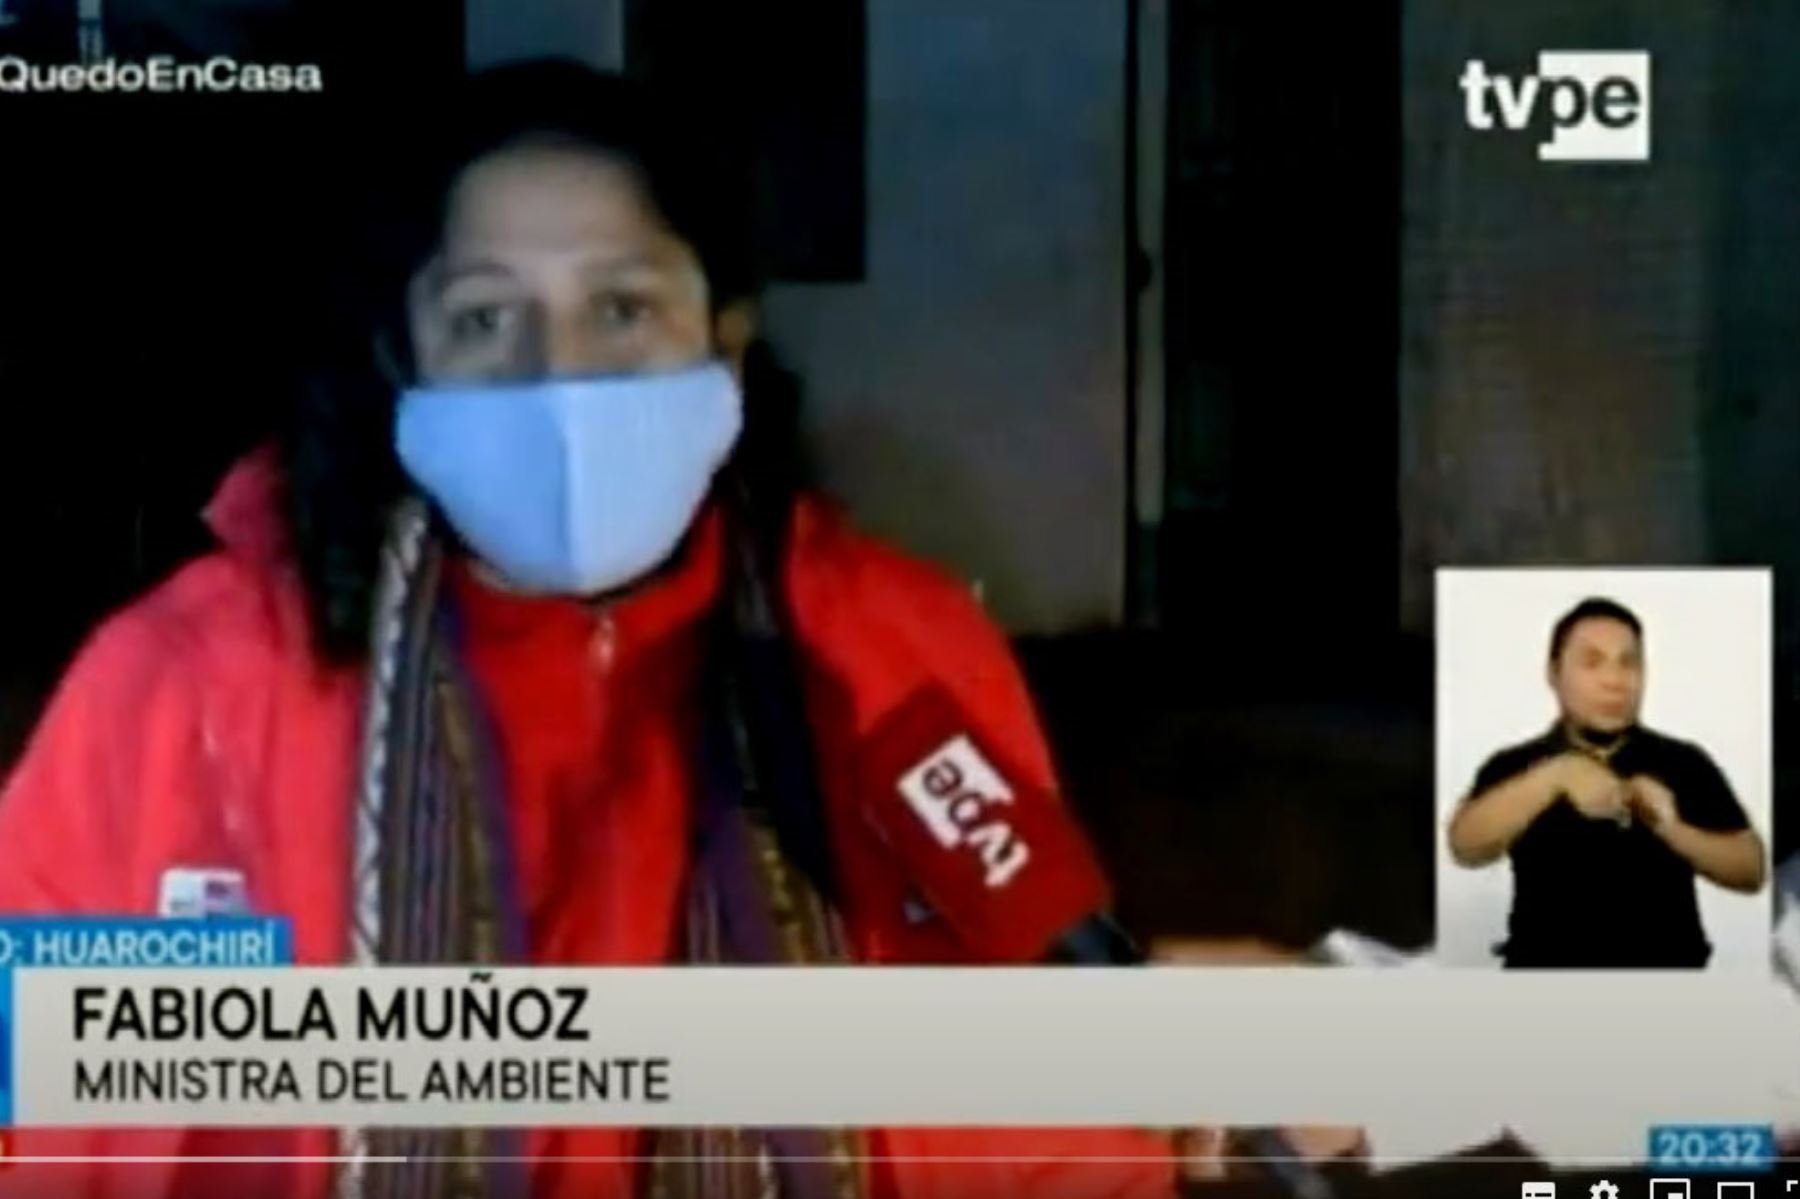 La ministra del Ambiente, Fabiola Muñoz, llegó a Matucana para coordinar el traslado de pobladores varados de diversas regiones.